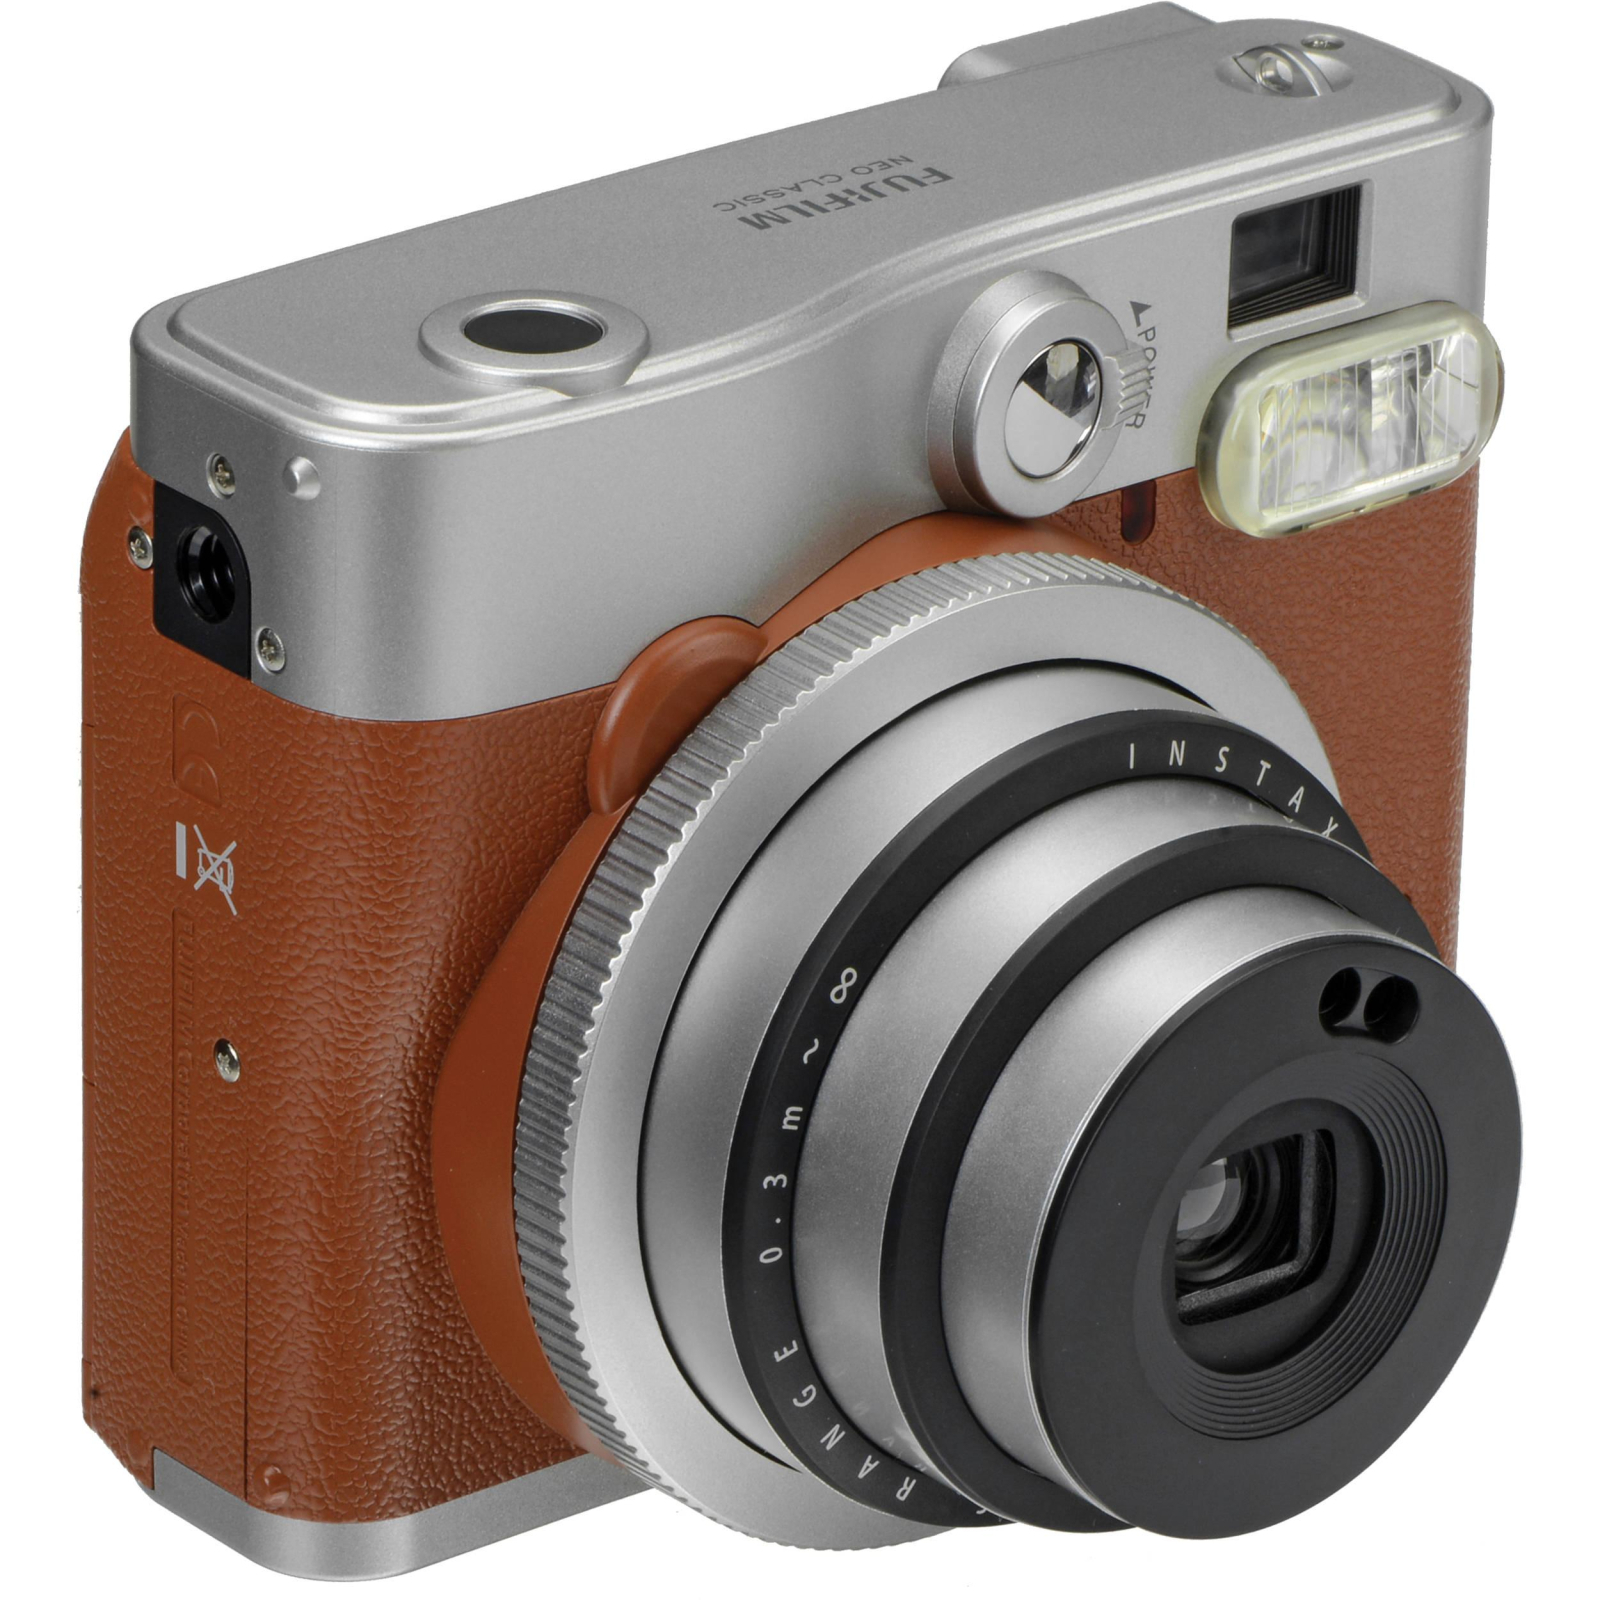 Камера моментальной печати Fujifilm Instax Mini 90 Instant camera NC EX D (16404583) изображение 3